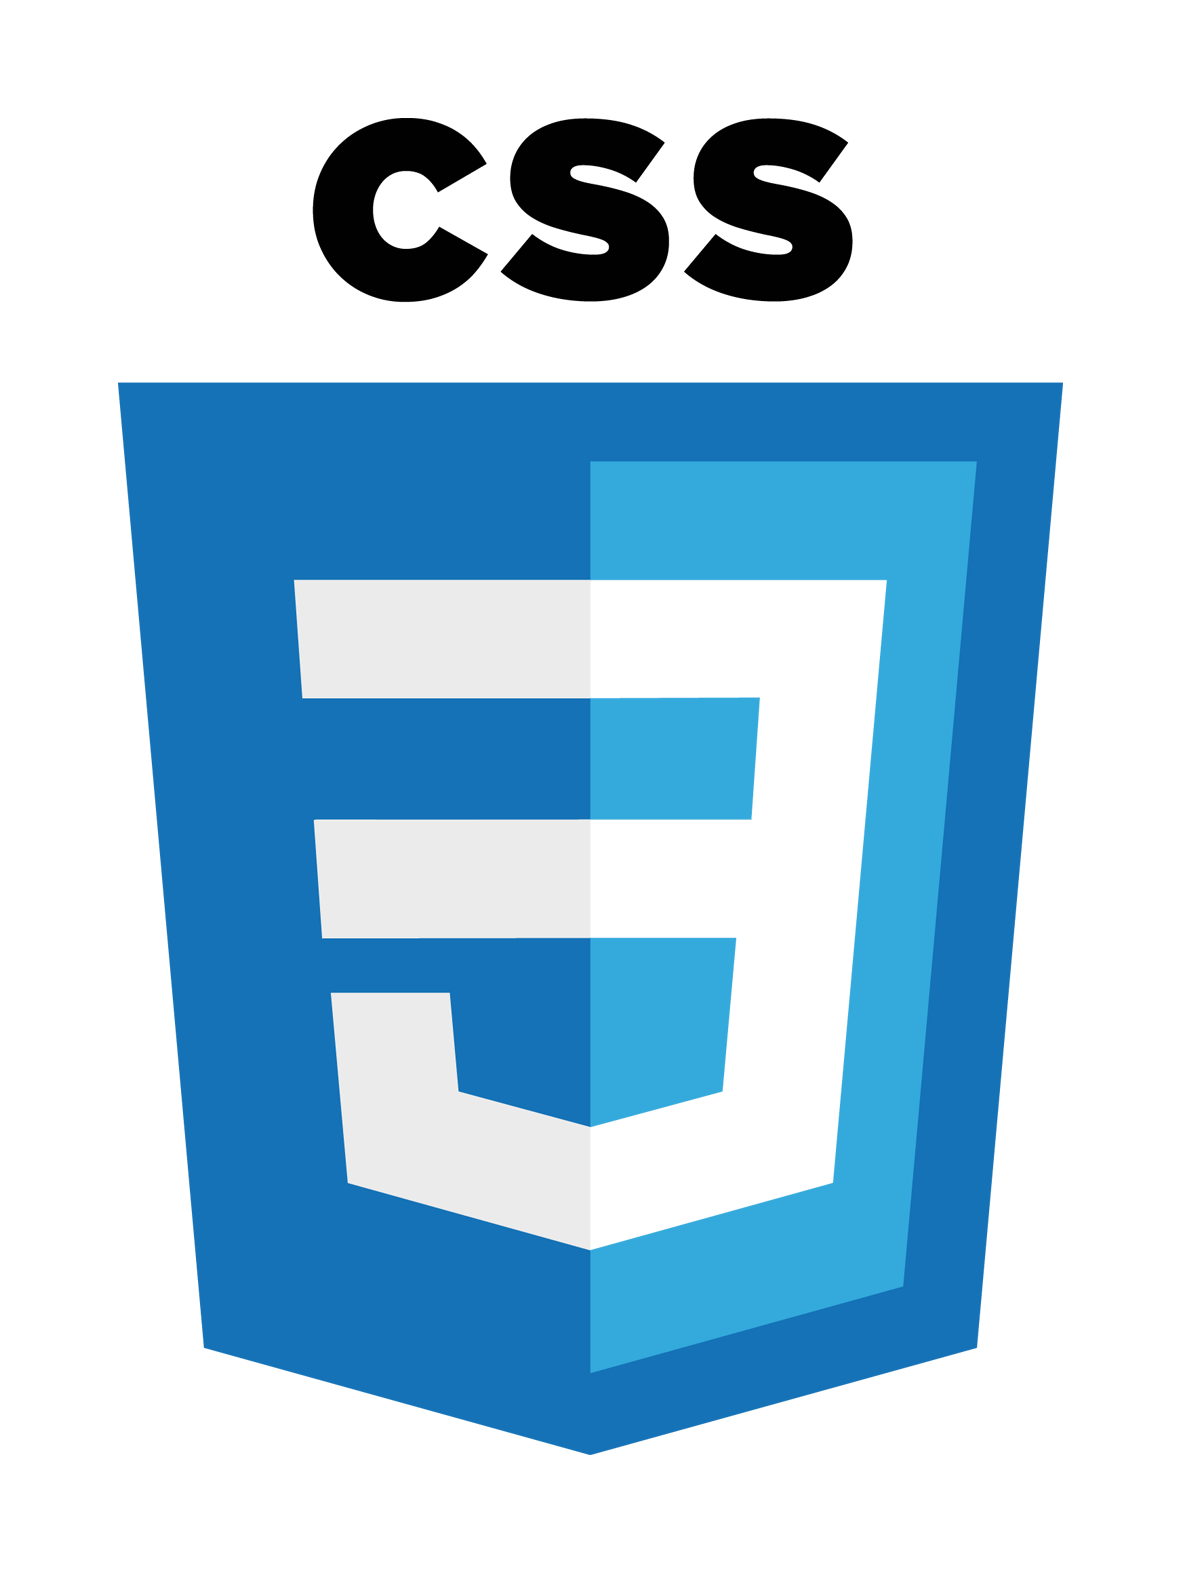 html css logo png - fond d'écran css - 1280x720 - WallpaperTip